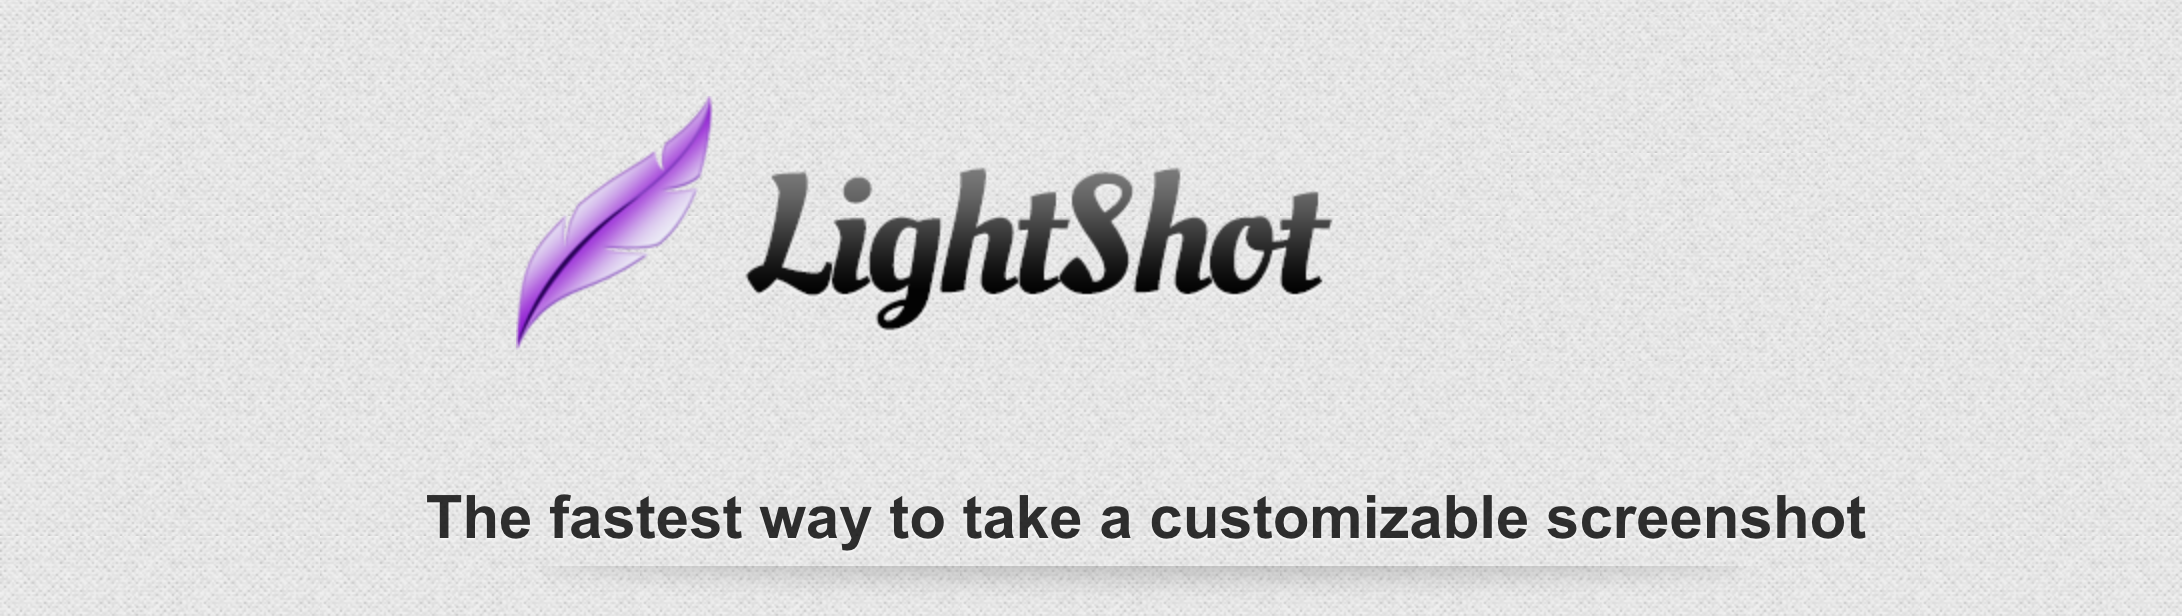 Lightshot. Lightshot логотип. Lightshot ярлык. Программа Lightshot.